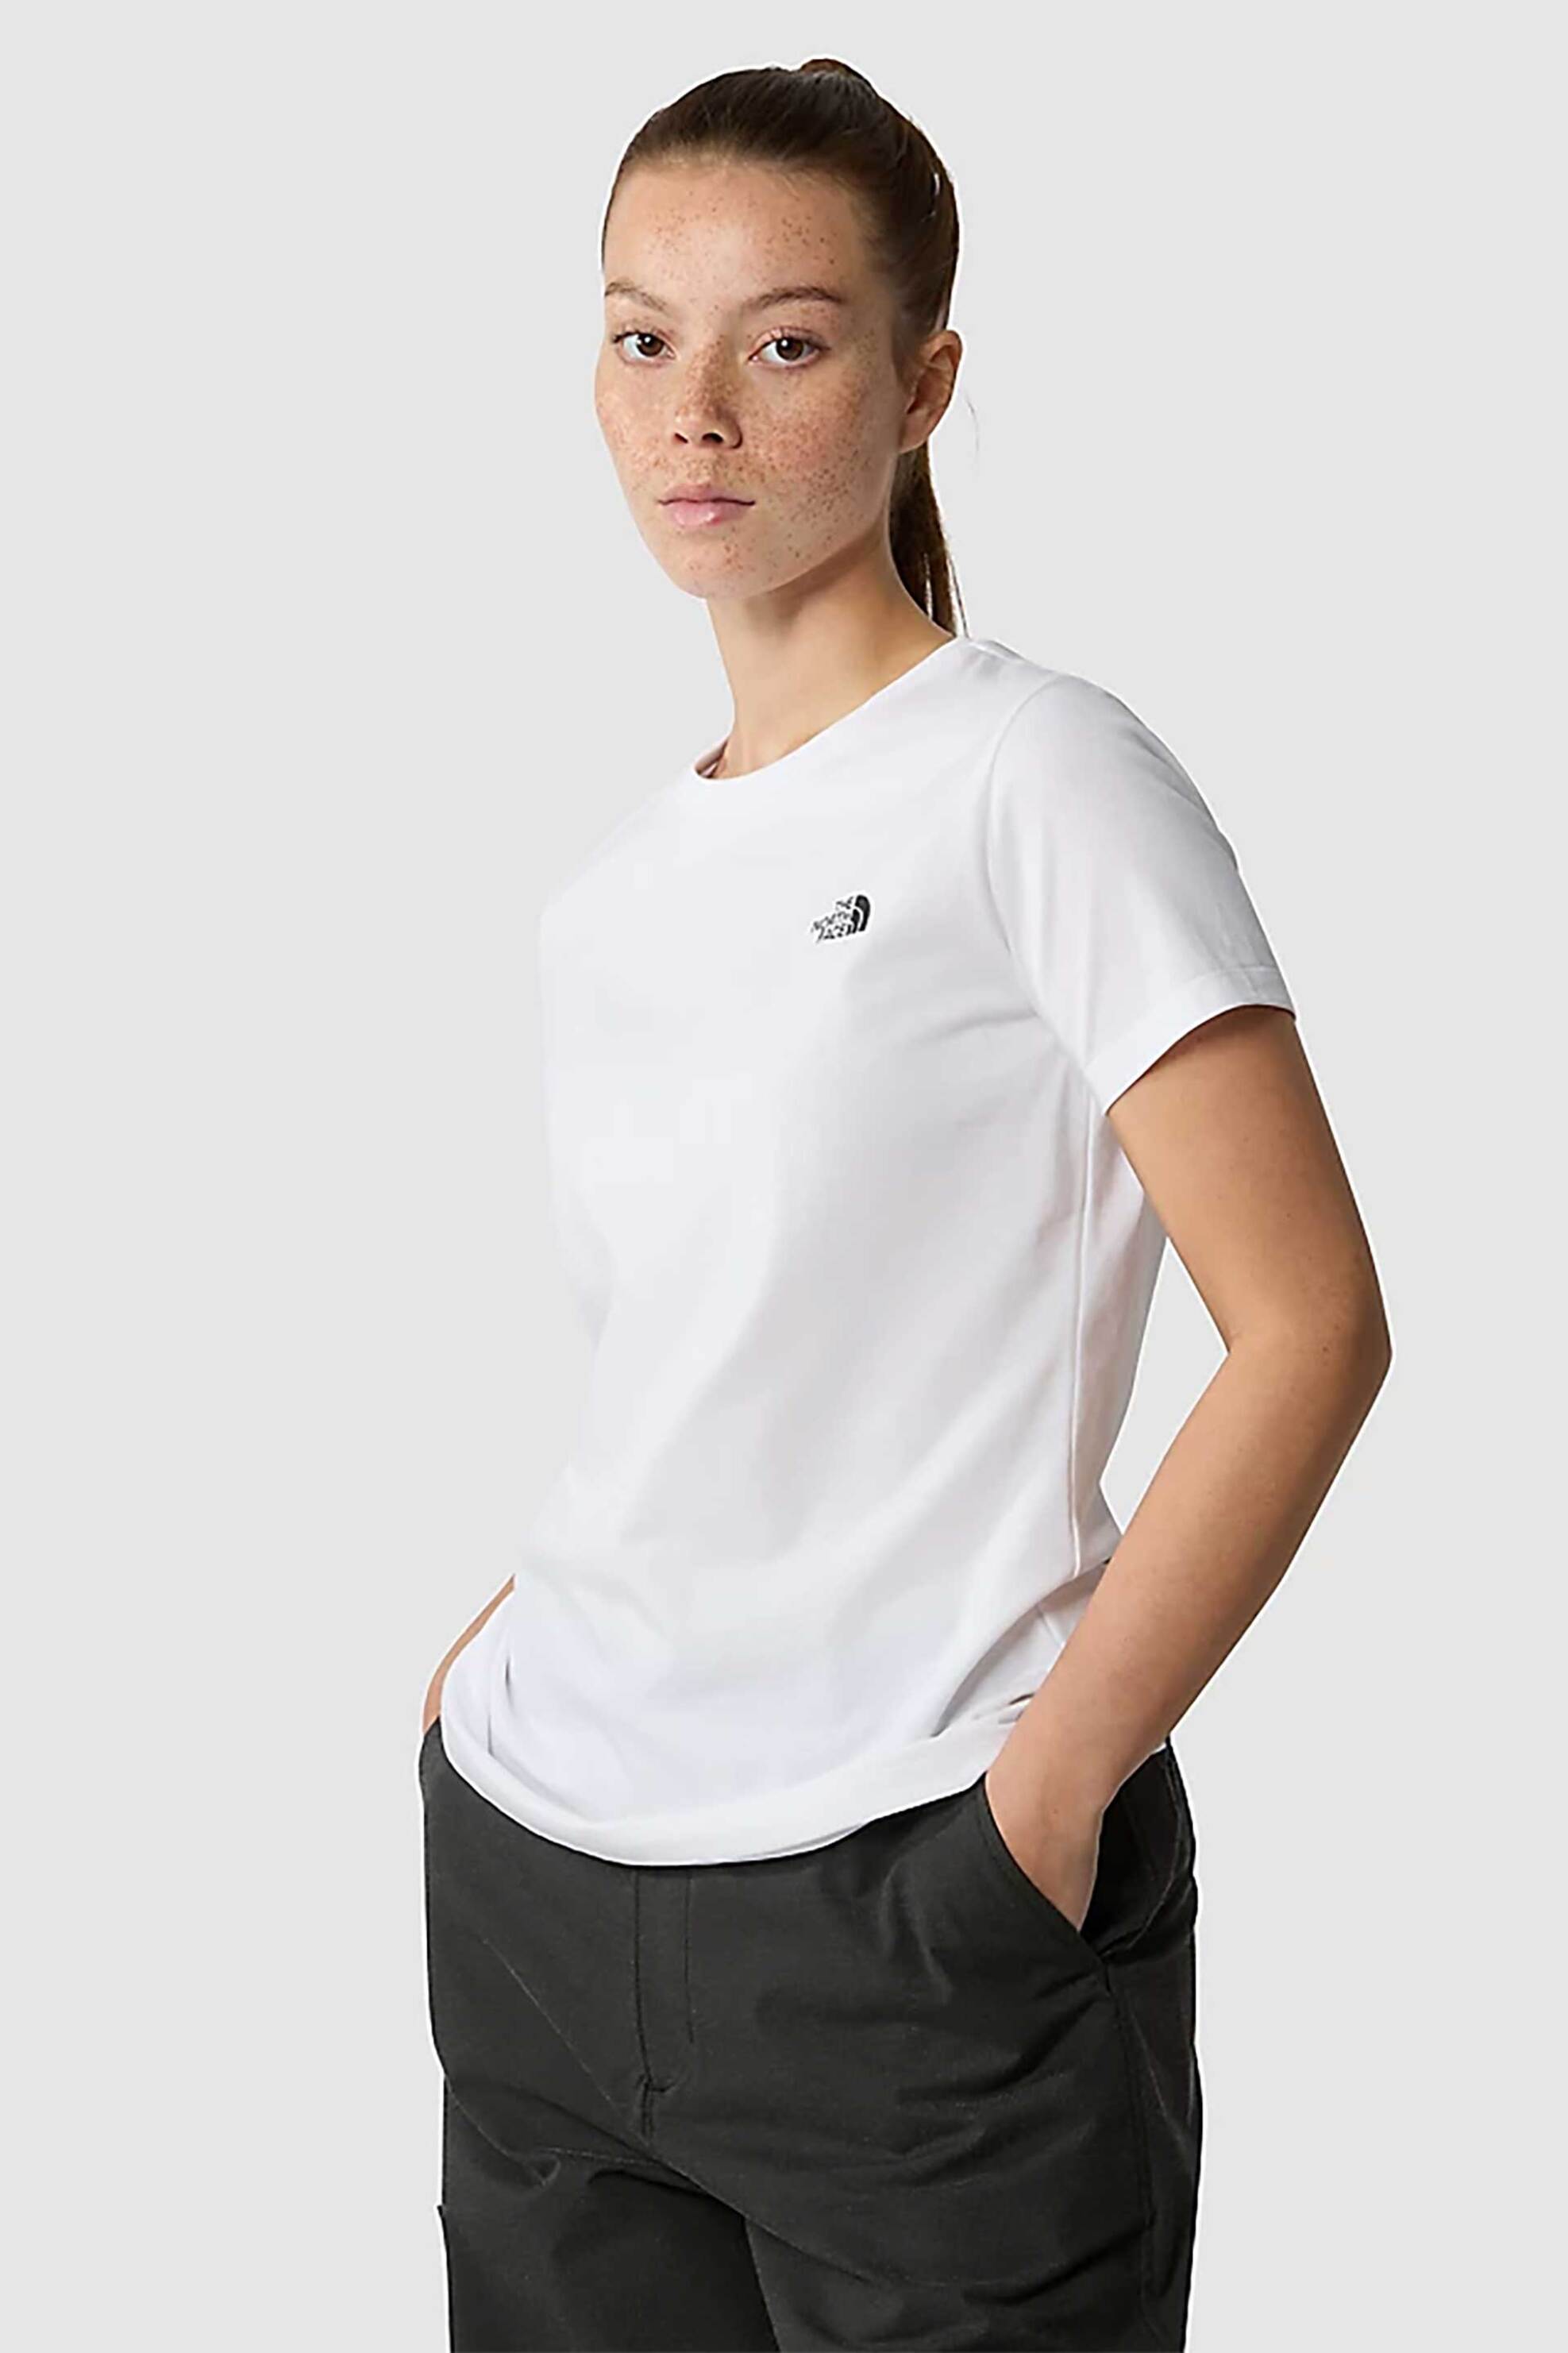 Γυναικεία Ρούχα & Αξεσουάρ > Γυναικεία Ρούχα > Γυναικεία Τοπ > Γυναικεία T-Shirts The North Face γυναικείο T-shirt μονόχρωμο με logo prints και logo loop label "Simple Dome" - NF0A87NHFN41 Λευκό